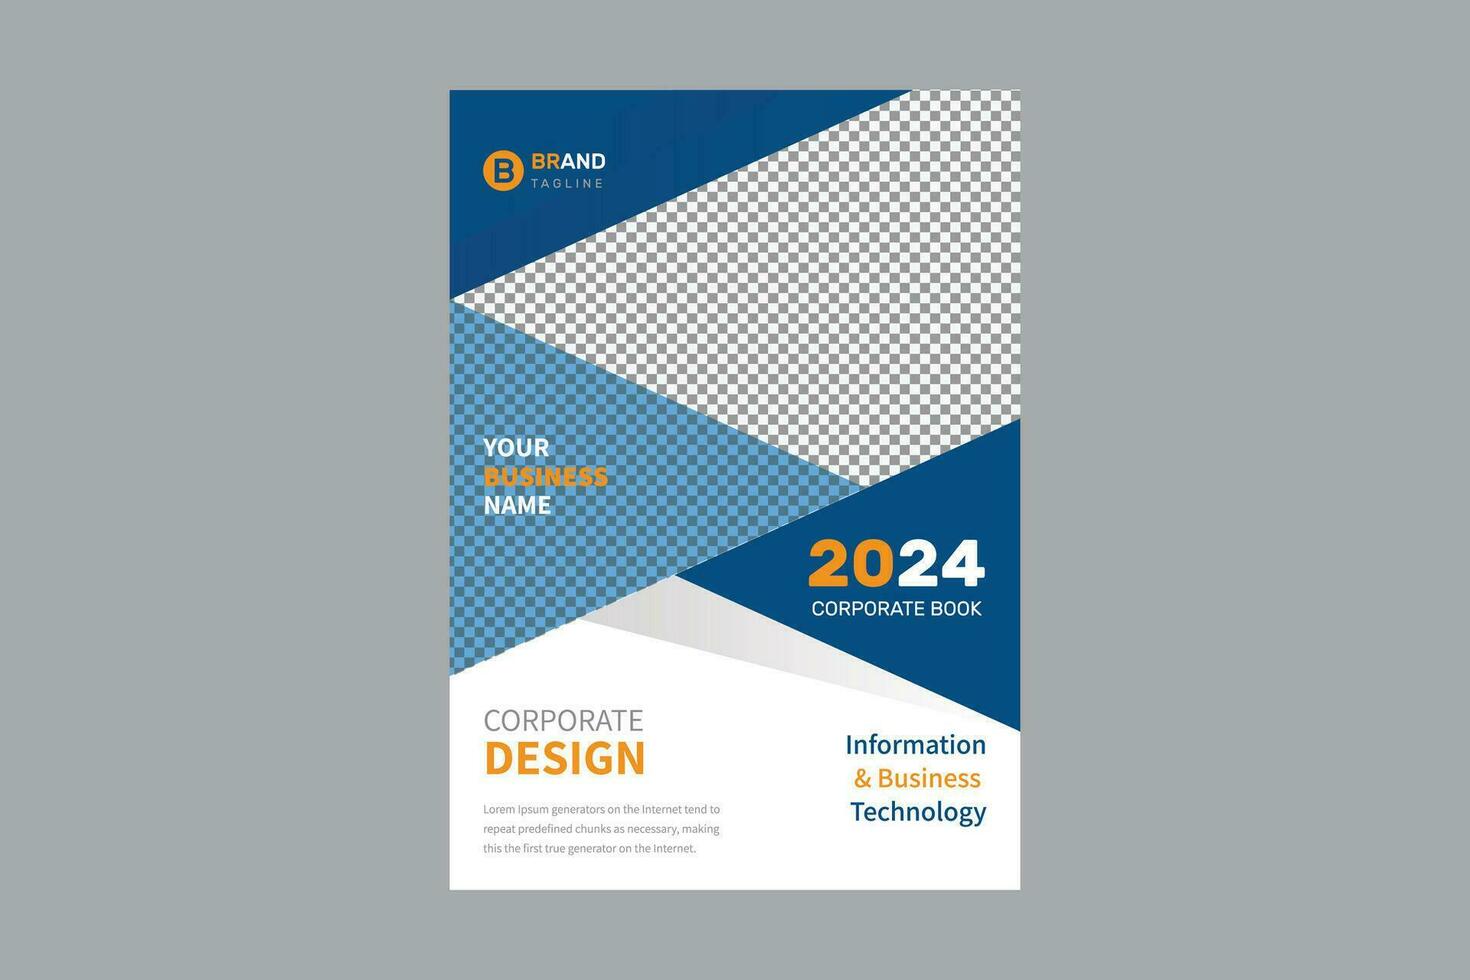 jährlich Bericht Broschüre Flyer Design Vorlage Vektor, Flugblatt, Präsentation Buch Startseite Vorlagen, Layout im a4 Größe vektor